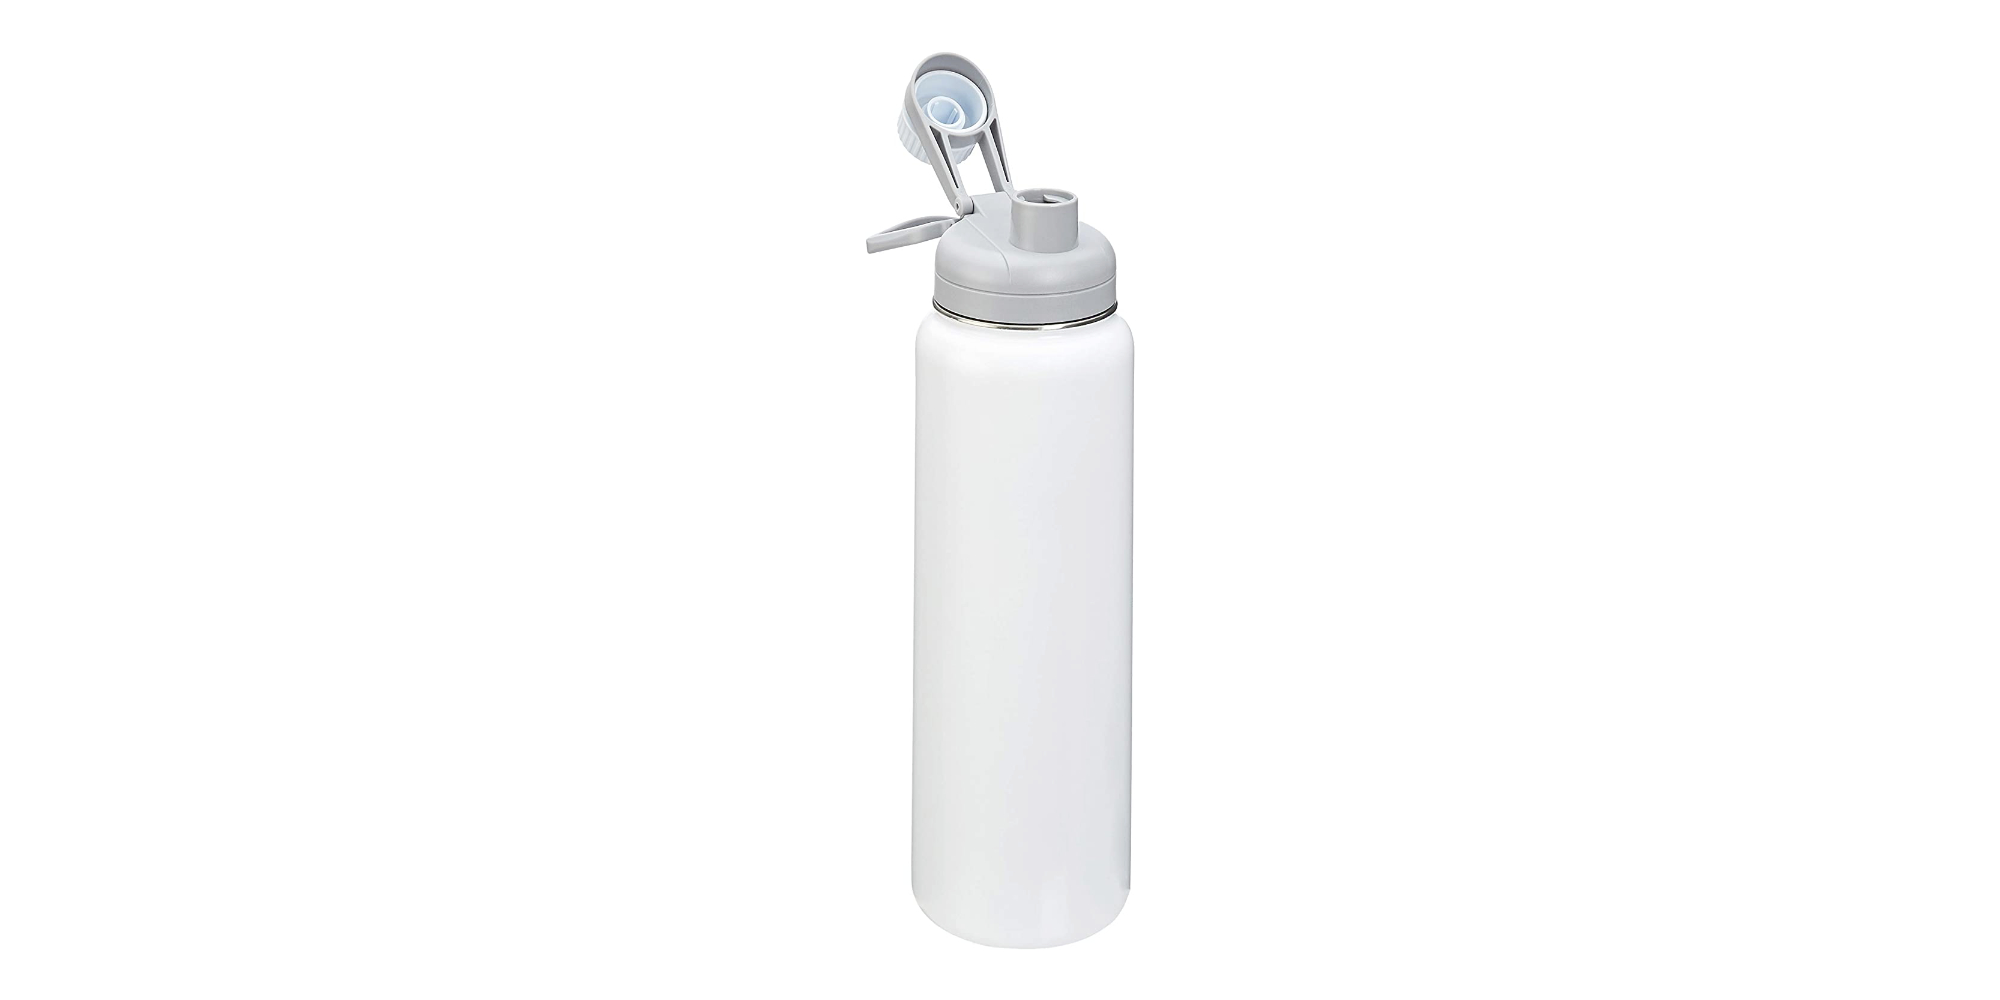 Hydro Flask 40-Ounce Water Bottle $29 (Reg $50)